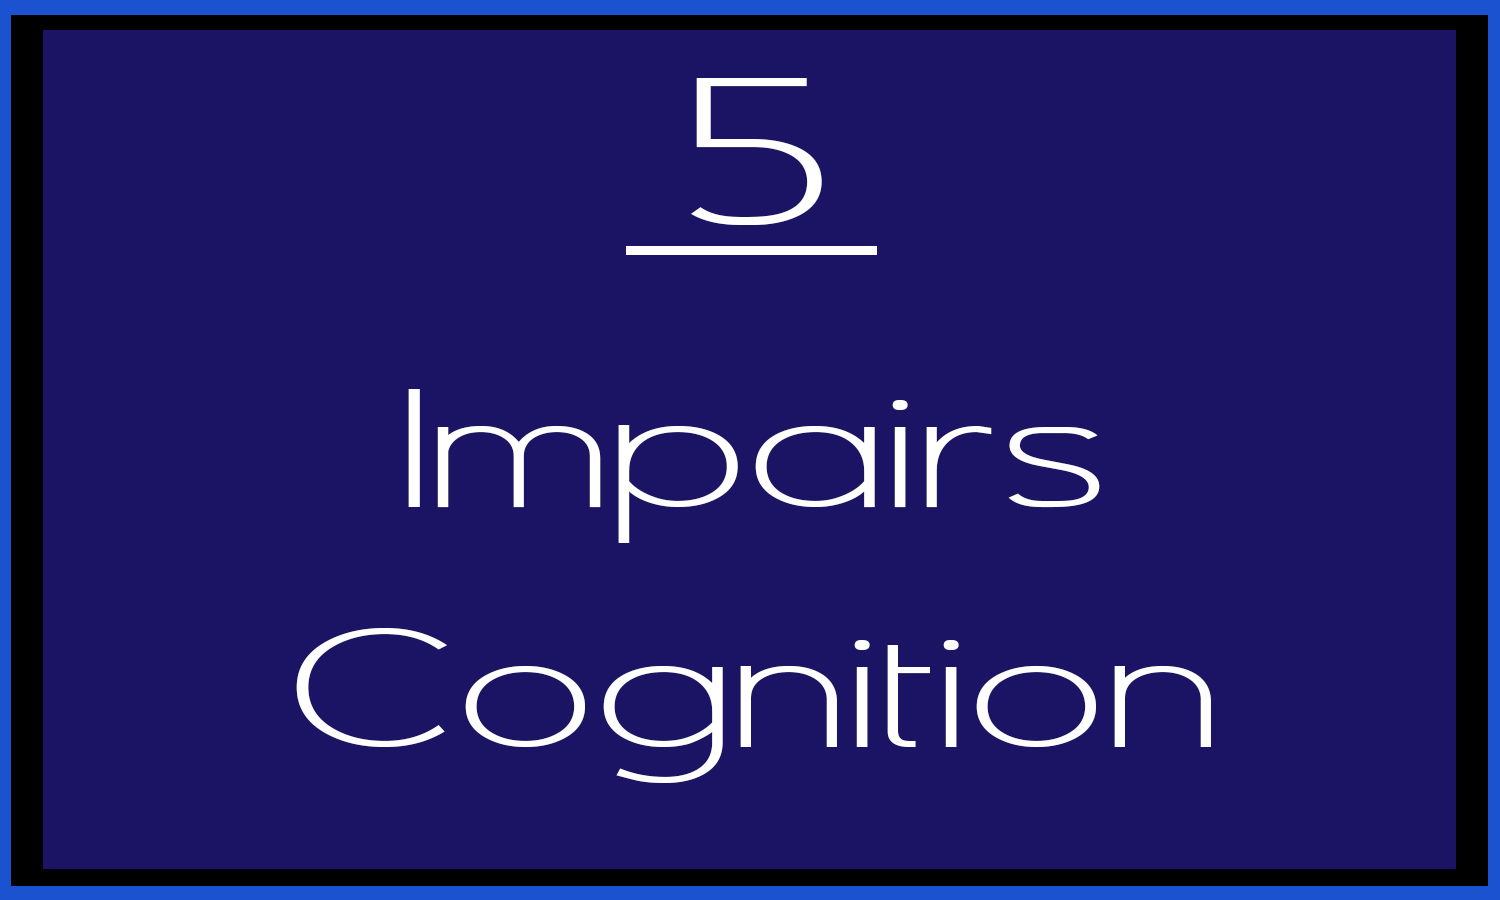 5_impairs cognition